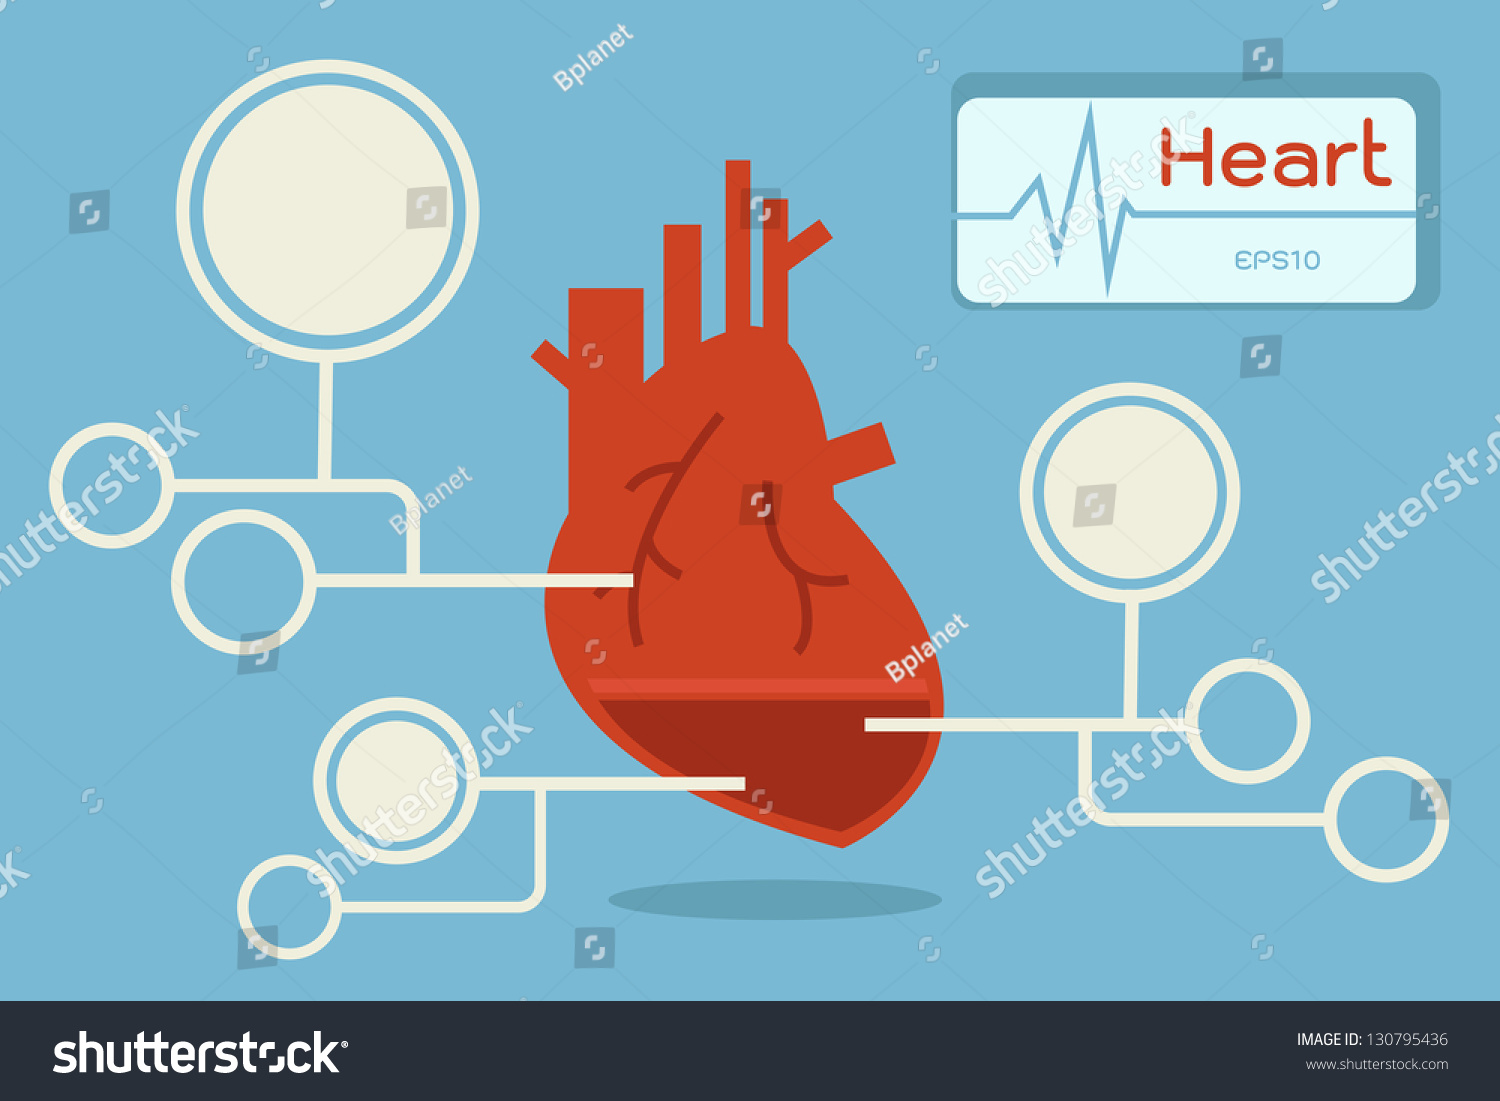 Heart Infographic Vector Stock Vector 130795436 - Shutterstock